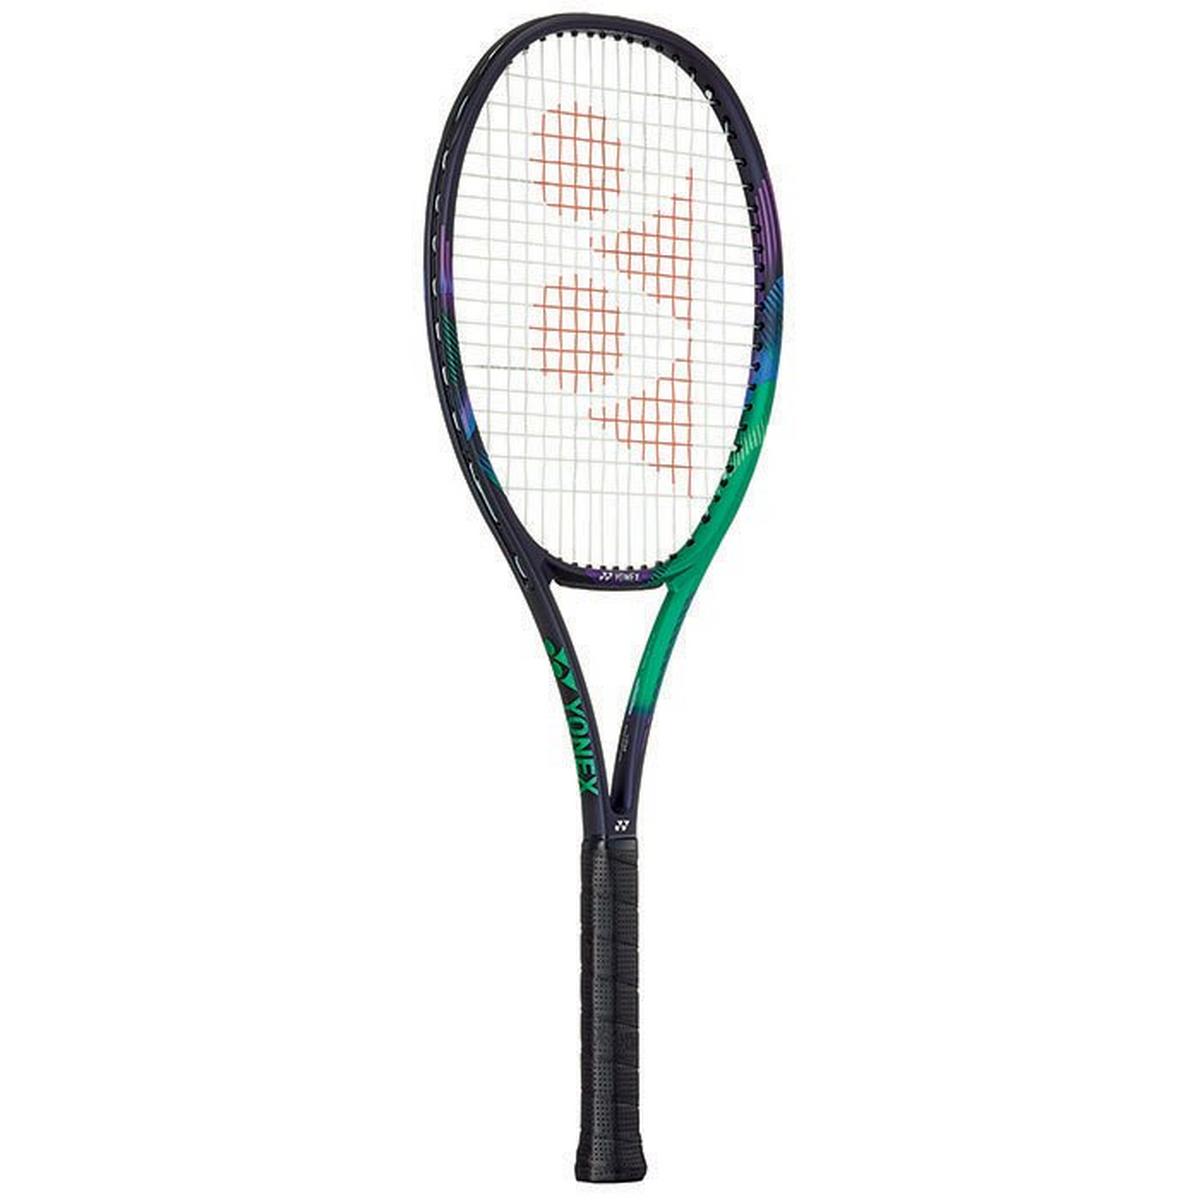 Cadre de raquette de tennis VCORE Pro 97 avec housse gratuite